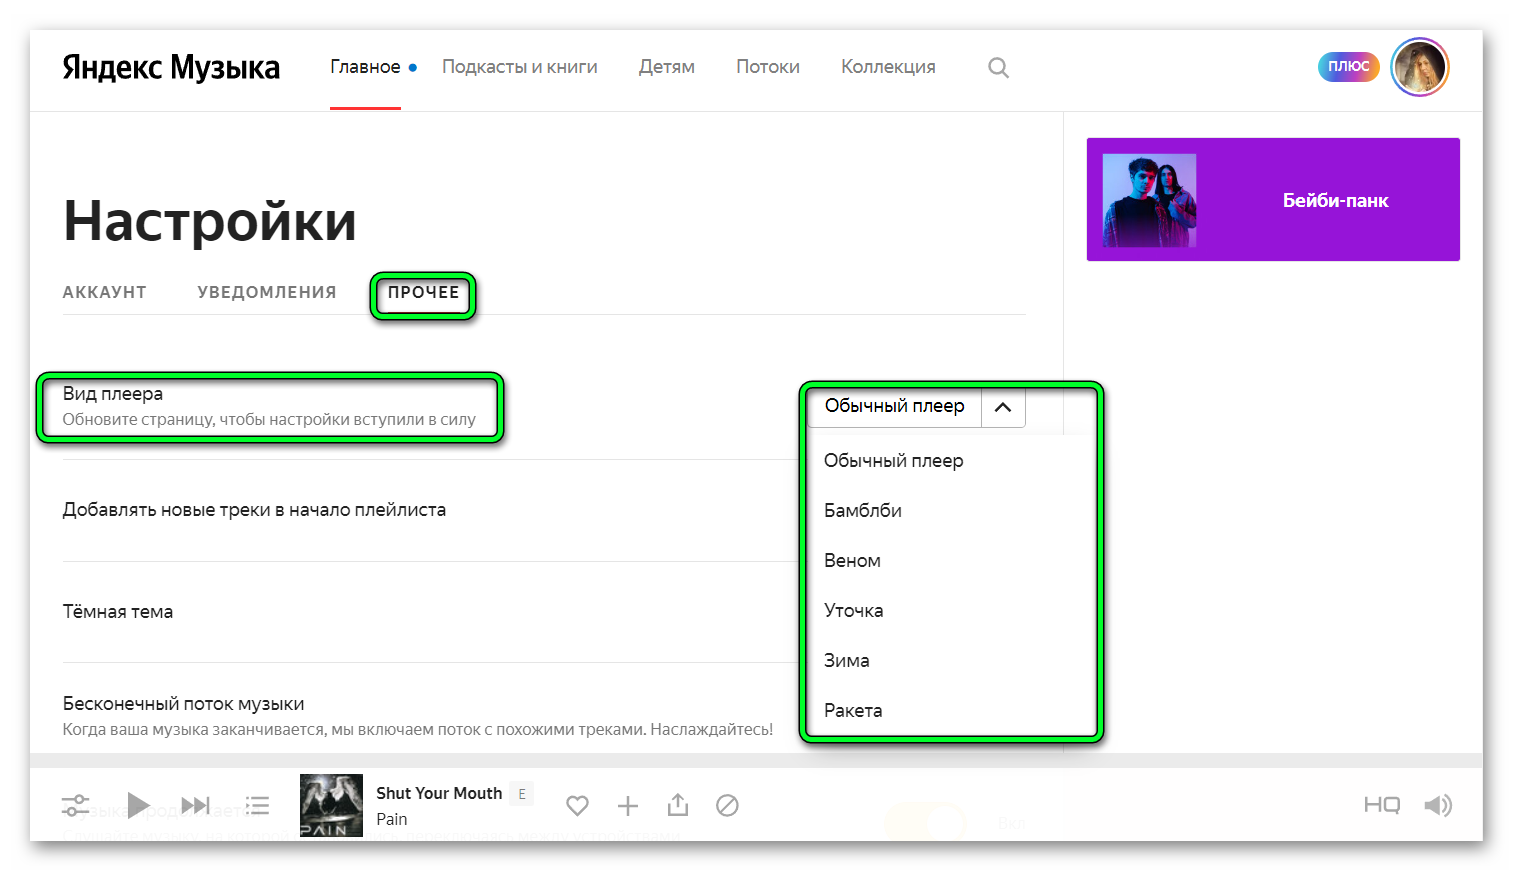 Вид плеера в Яндекс браузере в Яндекс музыке